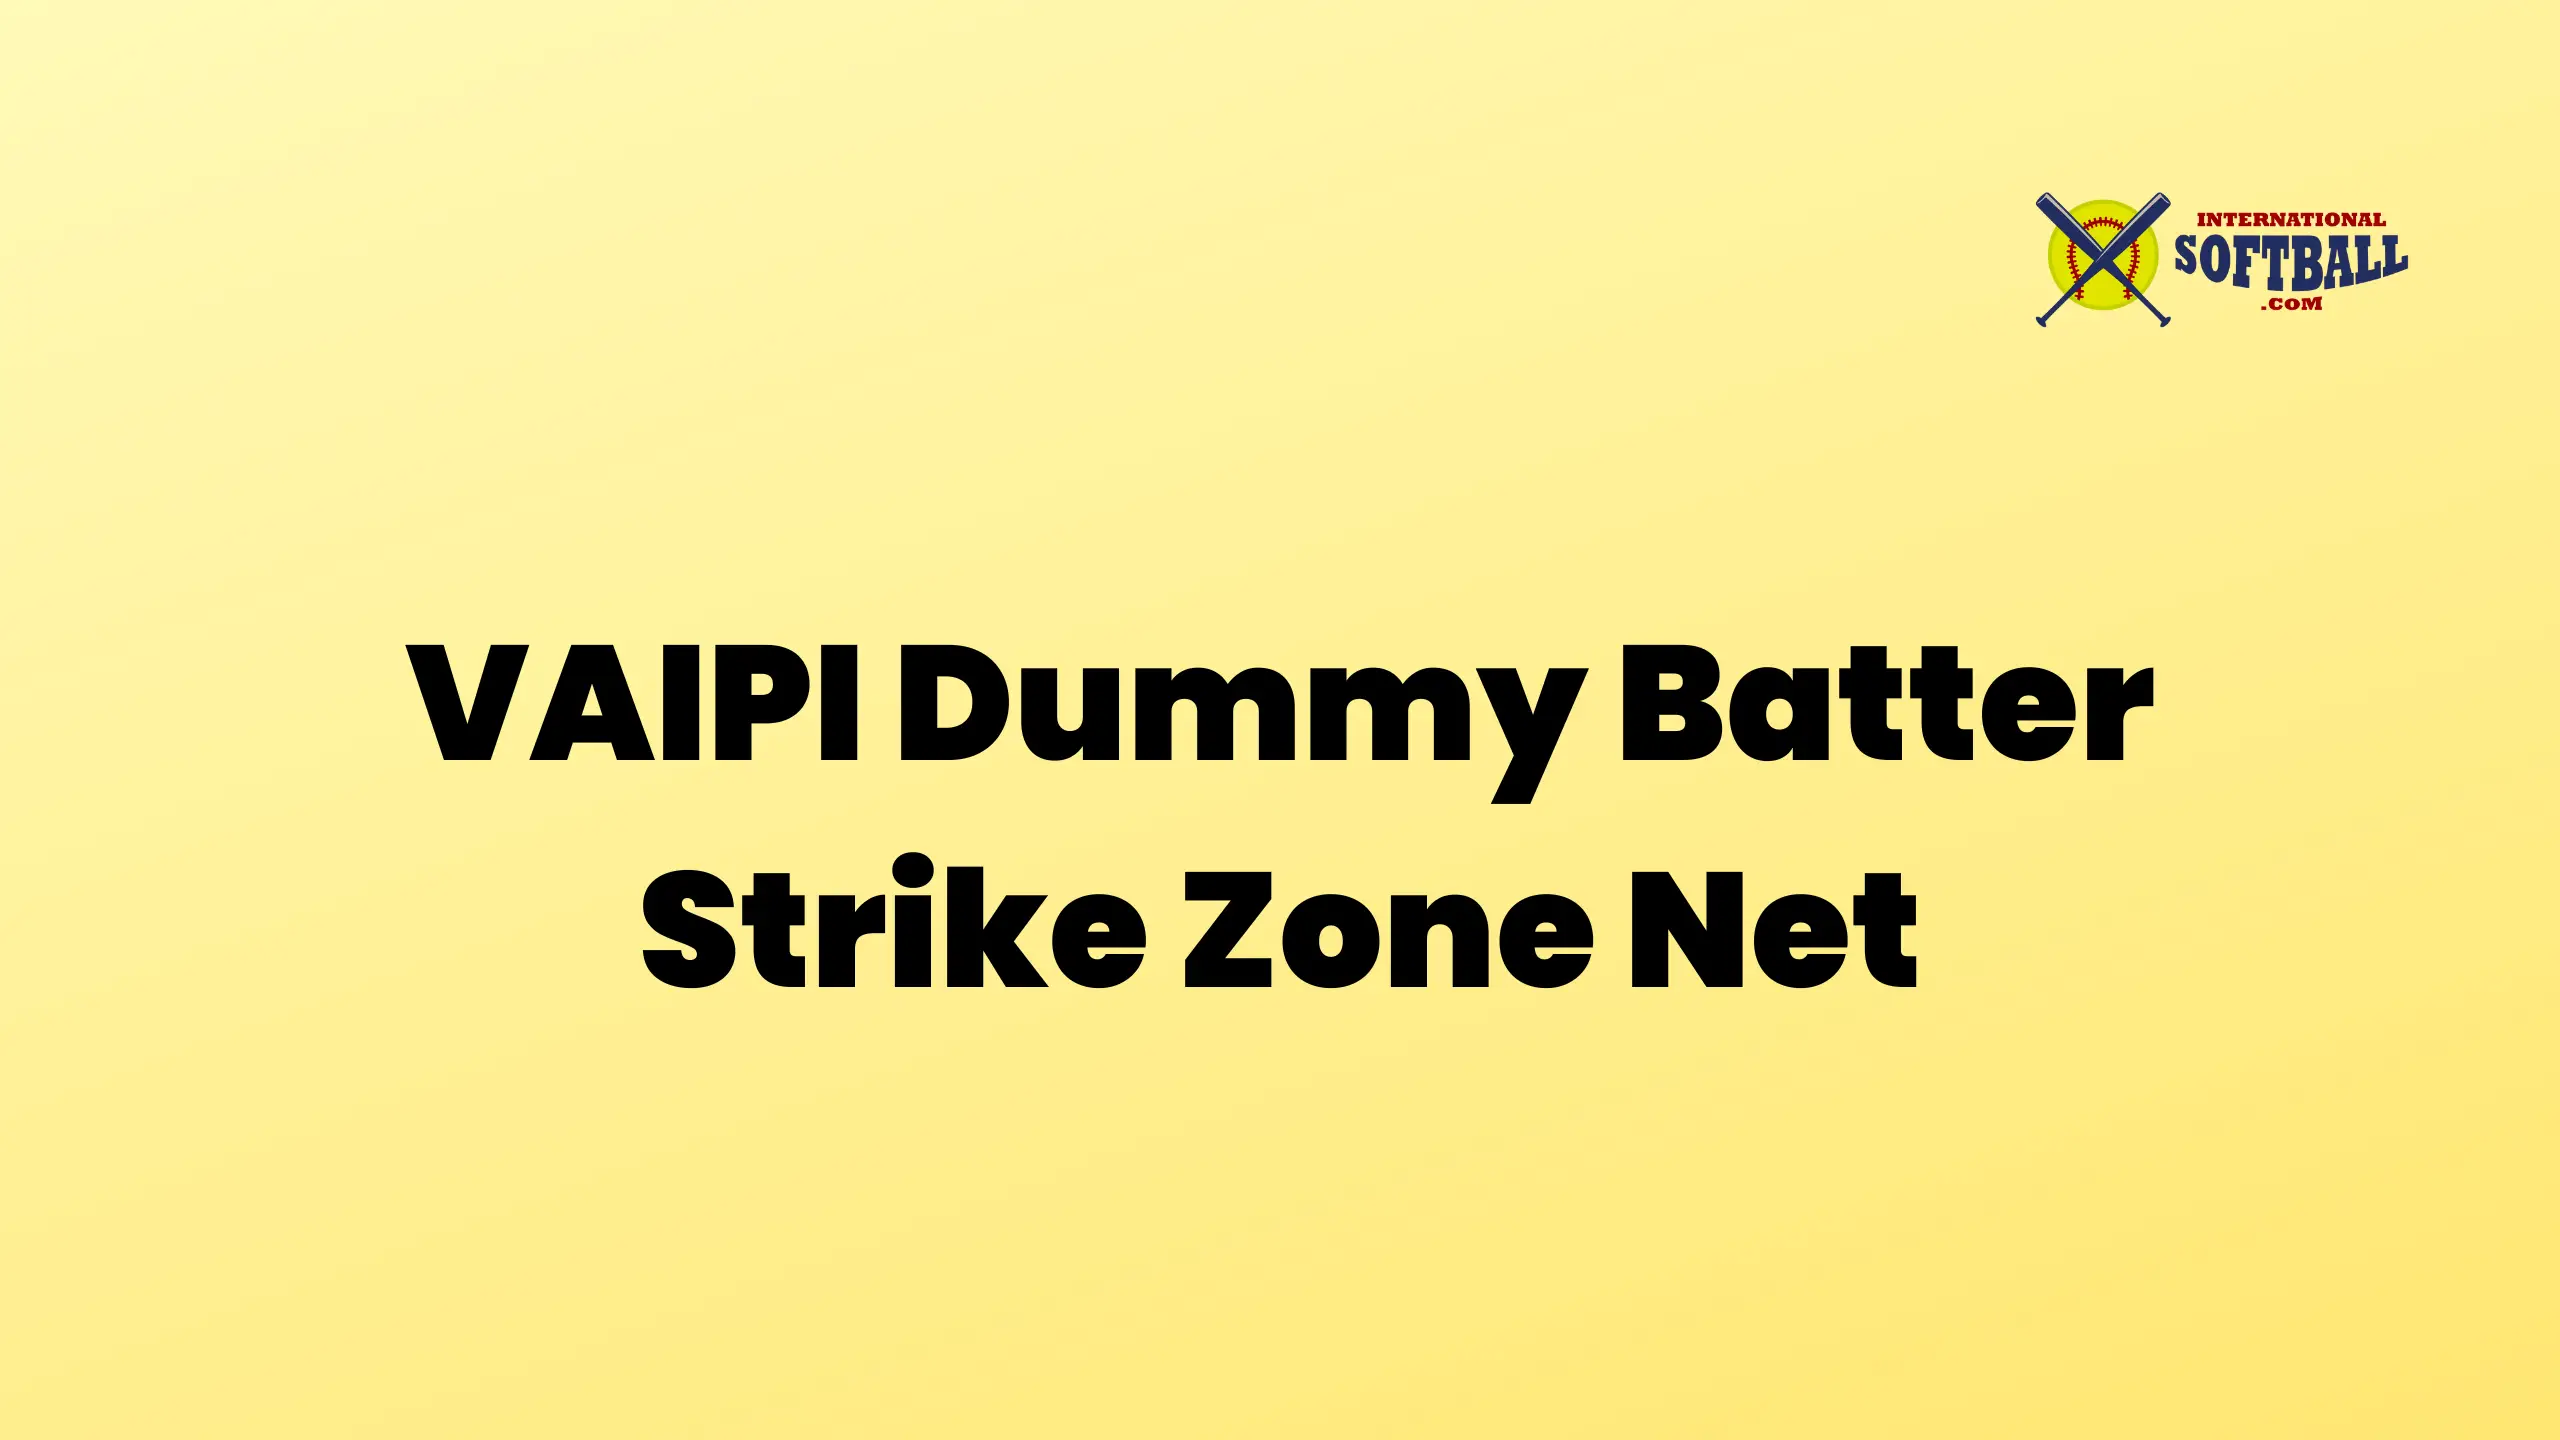 VAIPI Dummy Batter Strike Zone Net